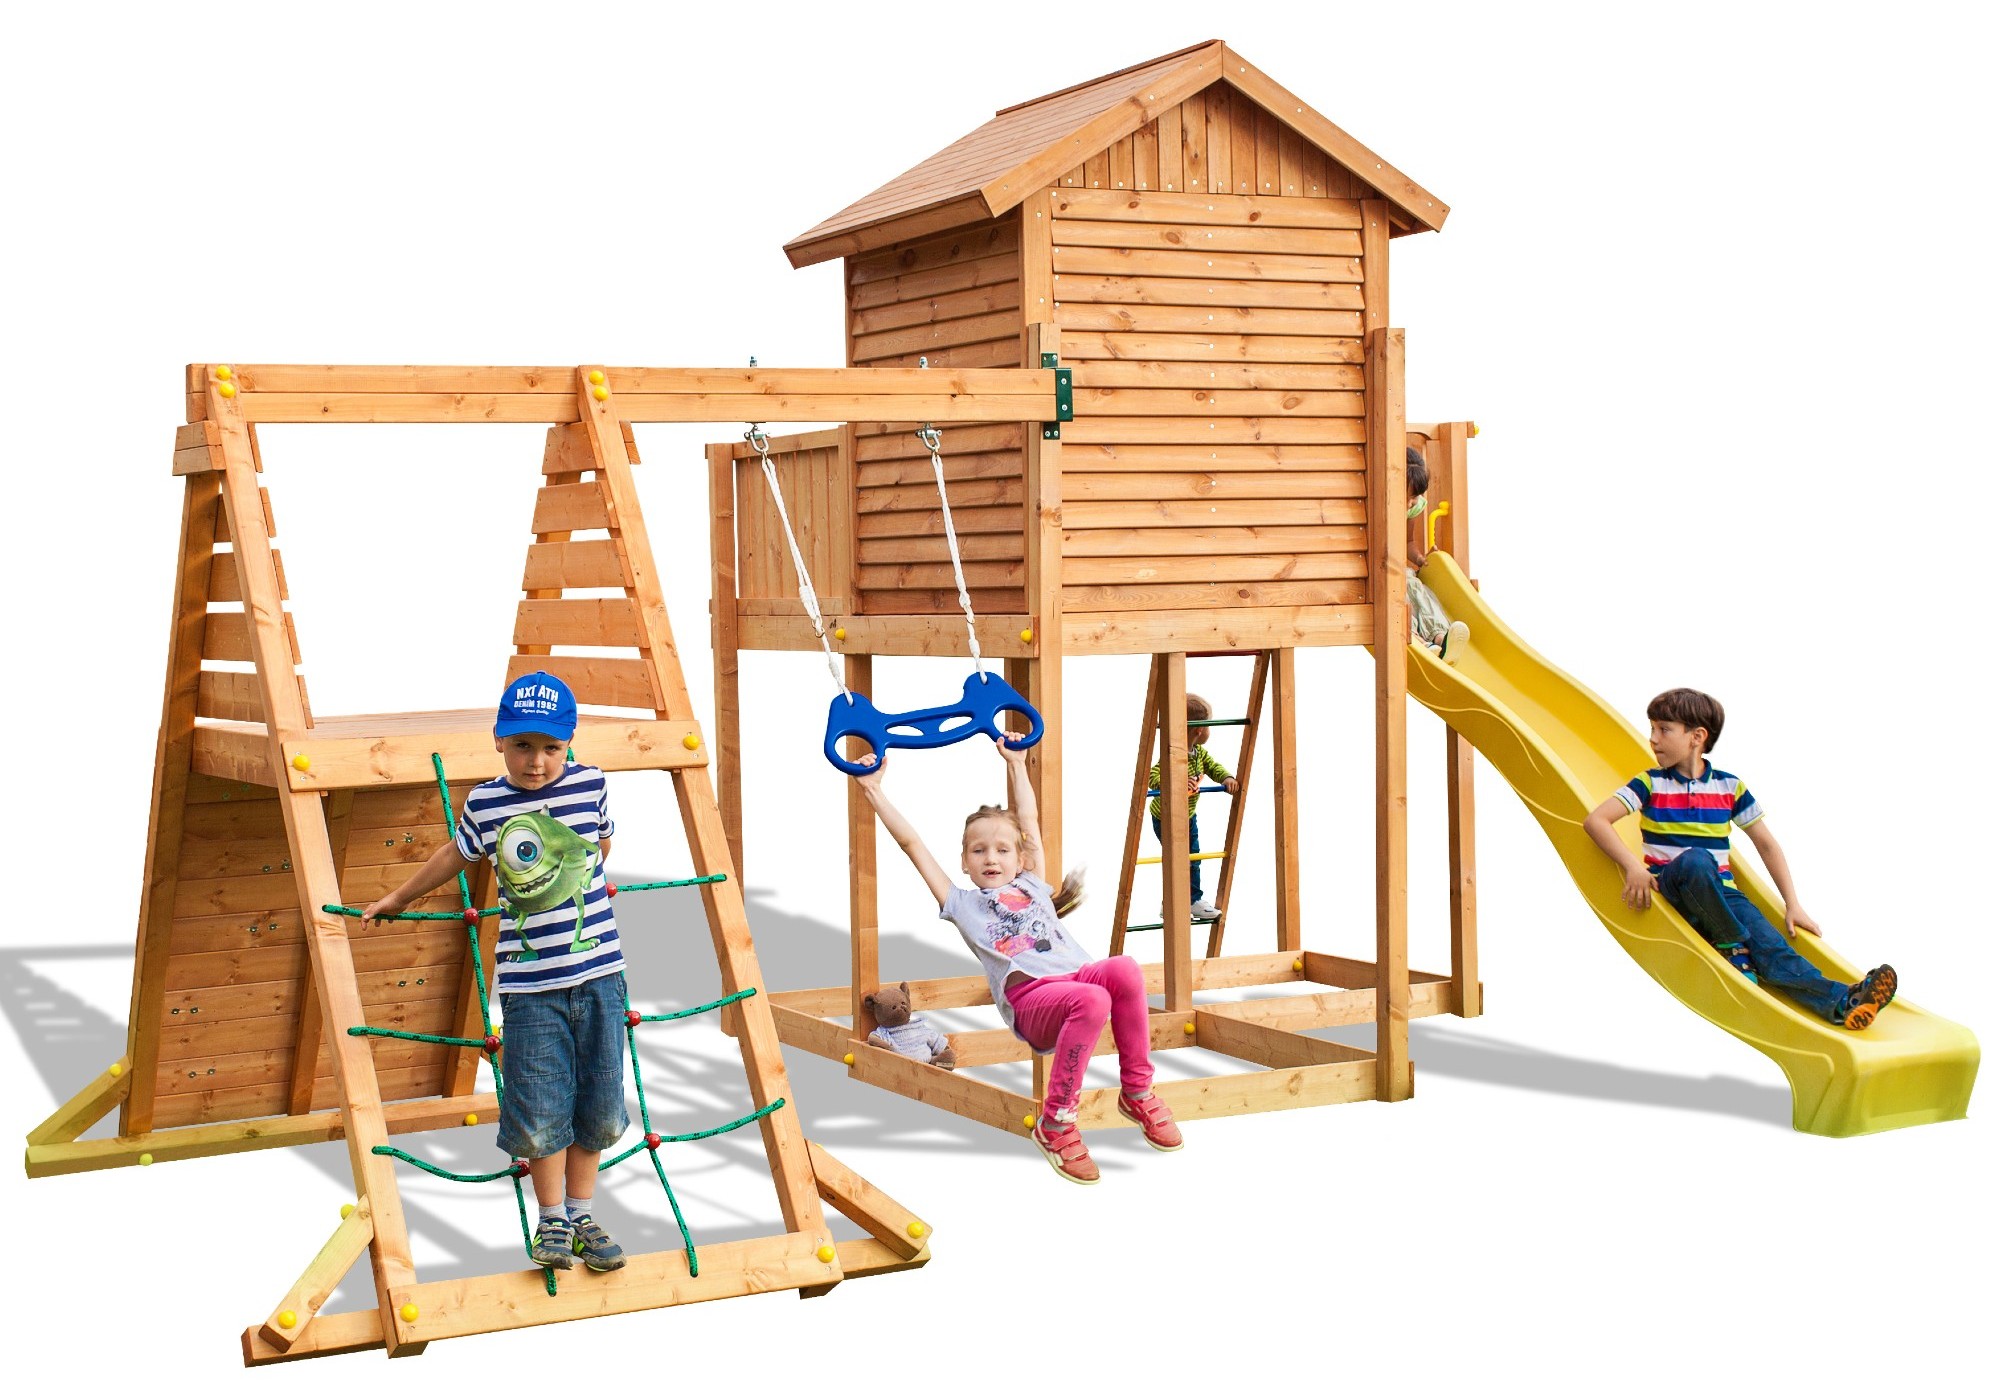 Plac zabaw drewniany ogrodowy duy MySide Spider domek, zjedalnia, hutawka, drabinka, siatka i cianka wspinaczkowa